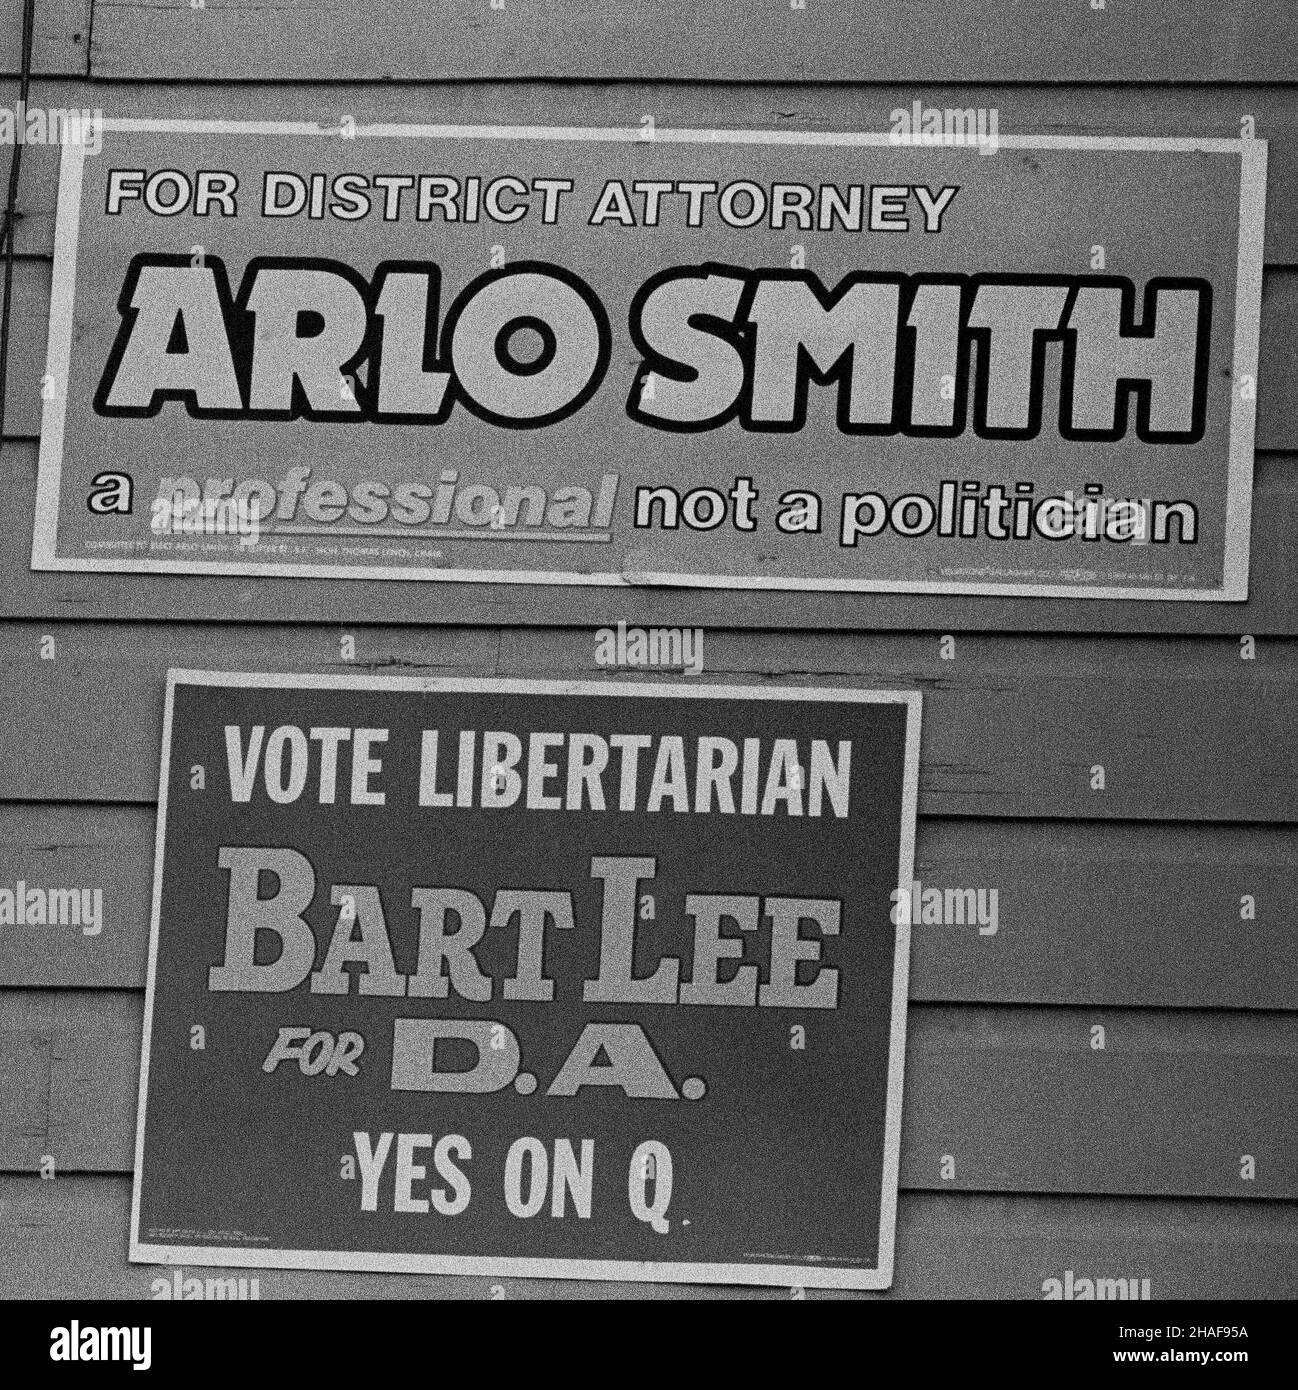 Votez Libertarian, Bart Lee pour DA, oui sur D, et pour le procureur de district Arlo Smith, un professionnel pas un politicien, des affiches de campagne sur un mur à San Francisco, Californie, 1970s Banque D'Images